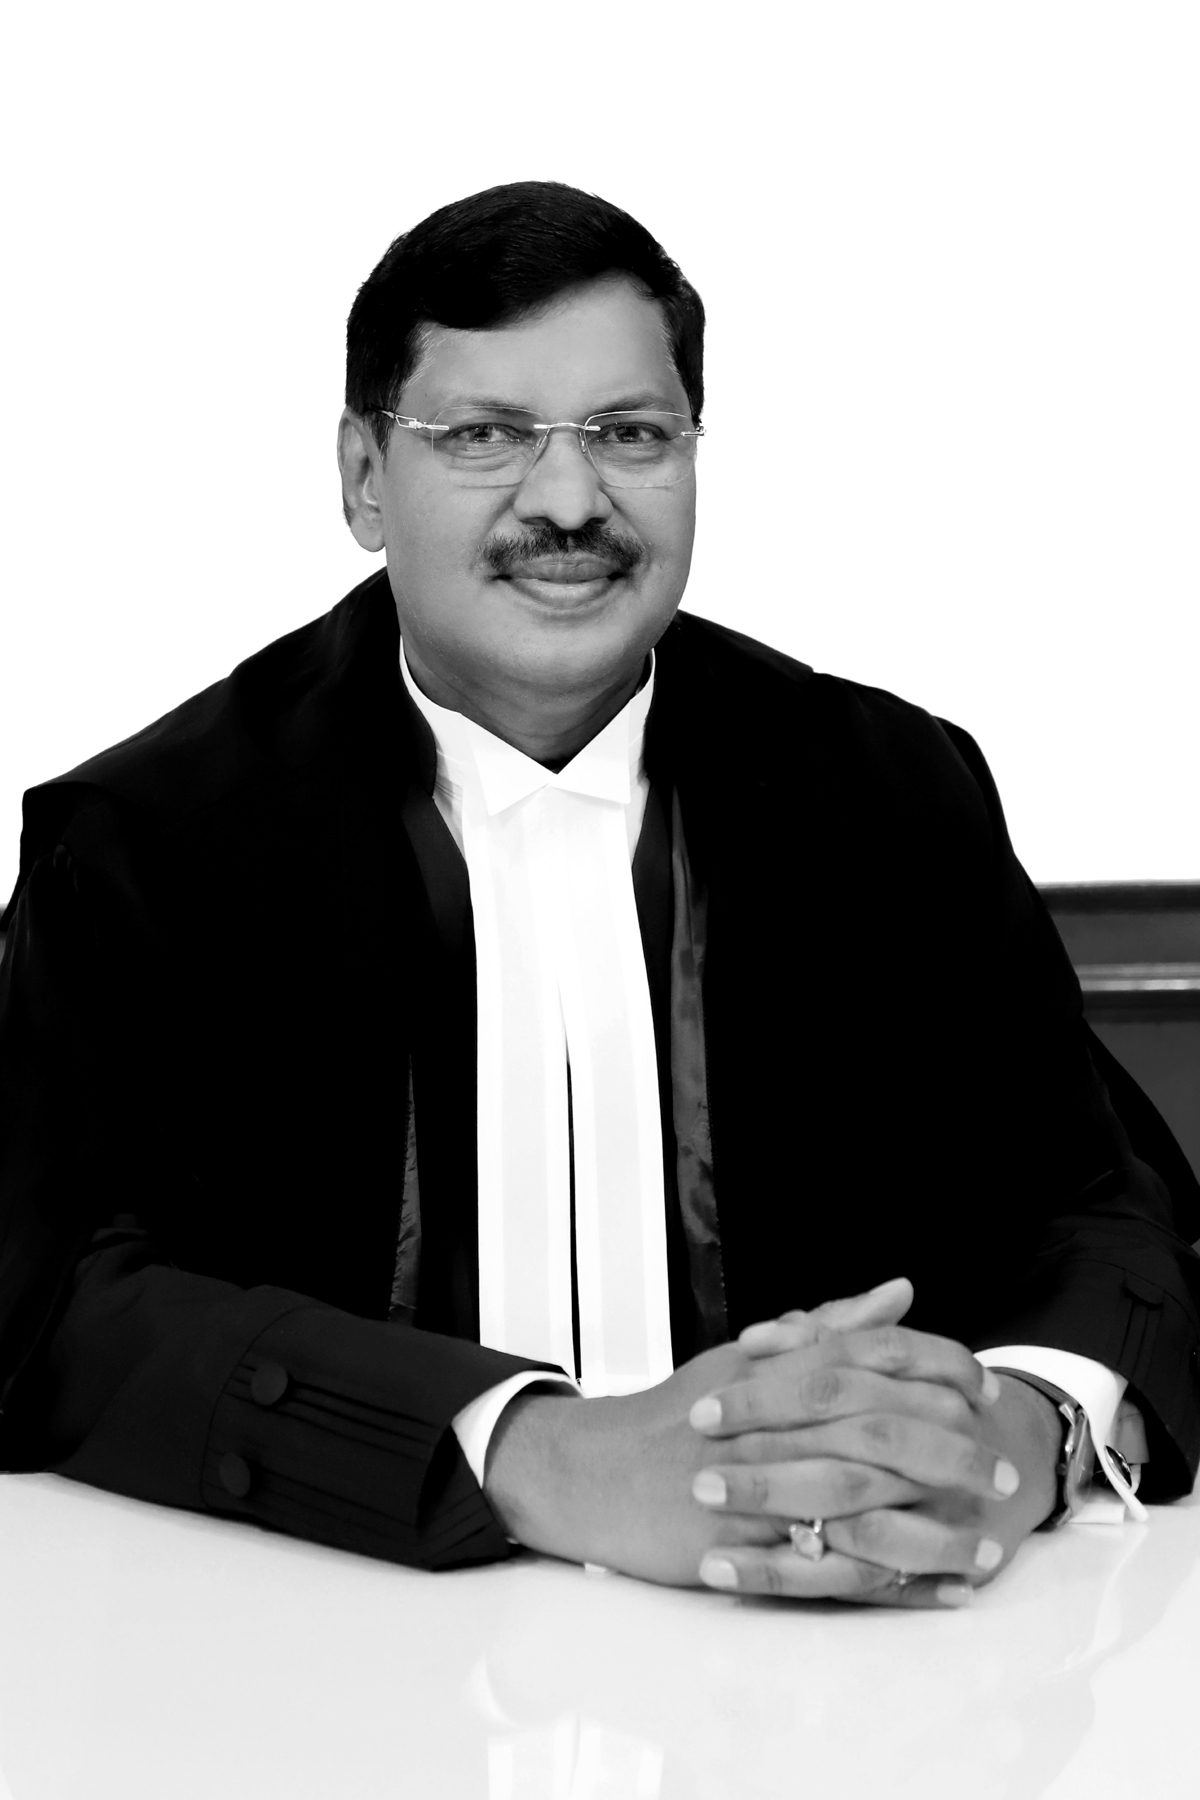 Hon'ble Mr. Justice Sanjay Kishan Kaul